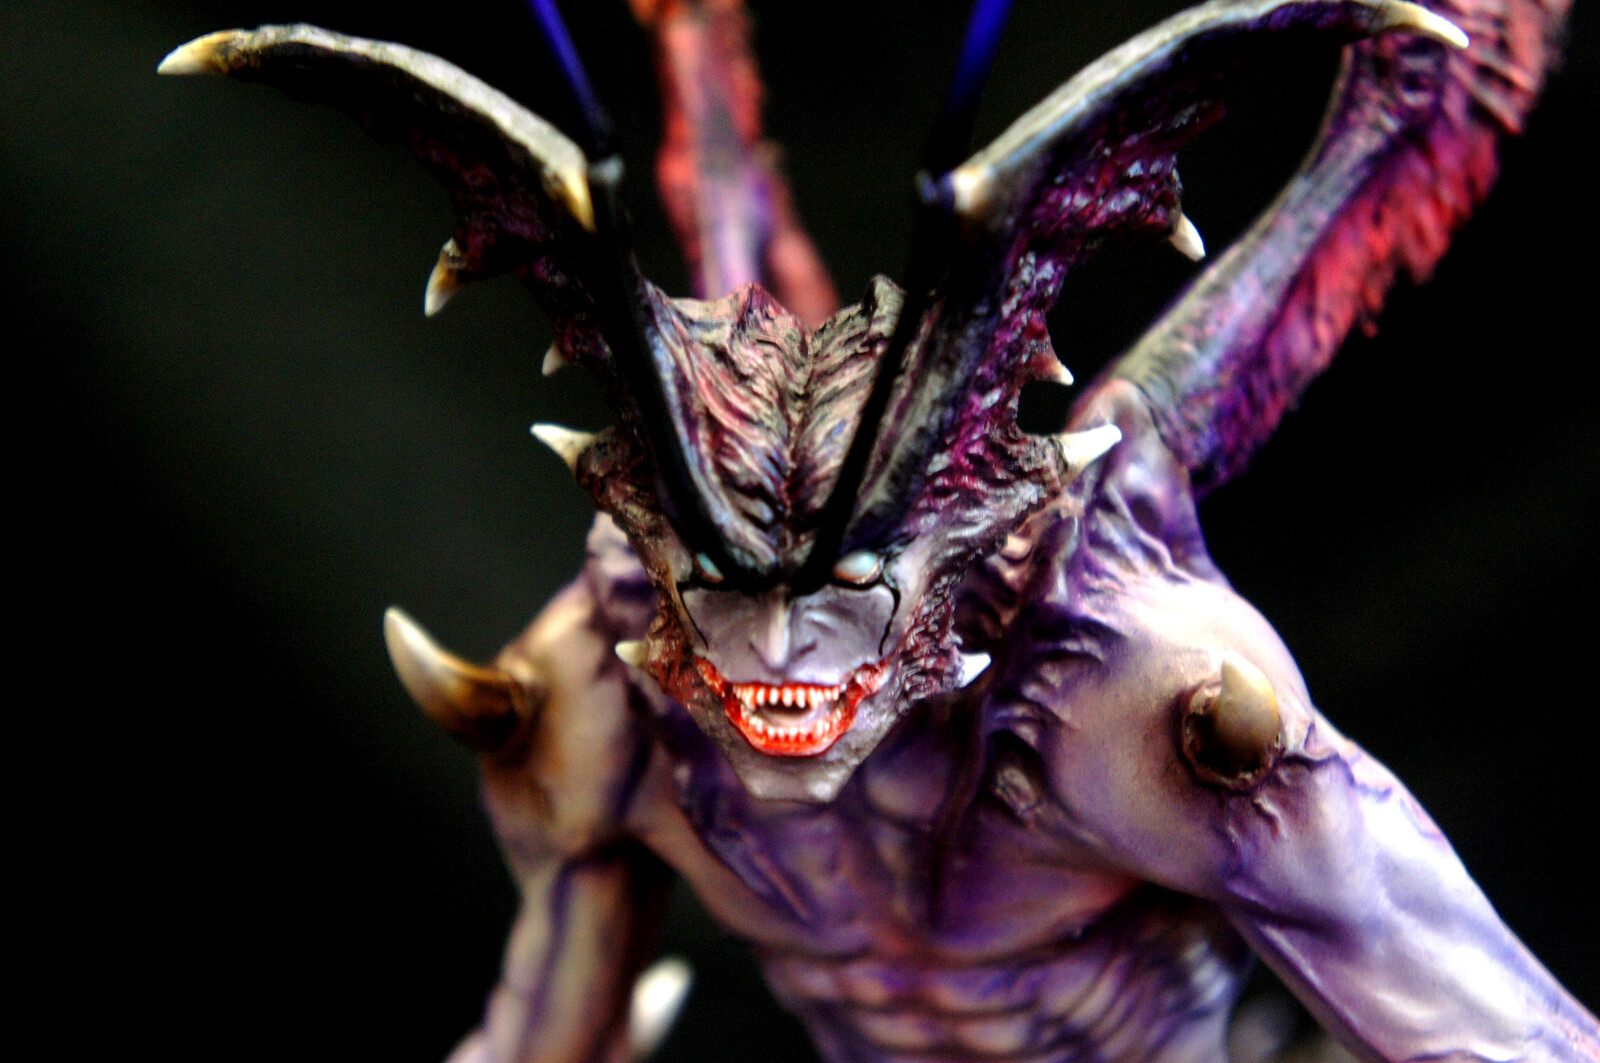 アモン デビルマン黙示録 + 魔法陣ベース ワ 1:6 レジンキット
Apocalypse of Devilman : Amon